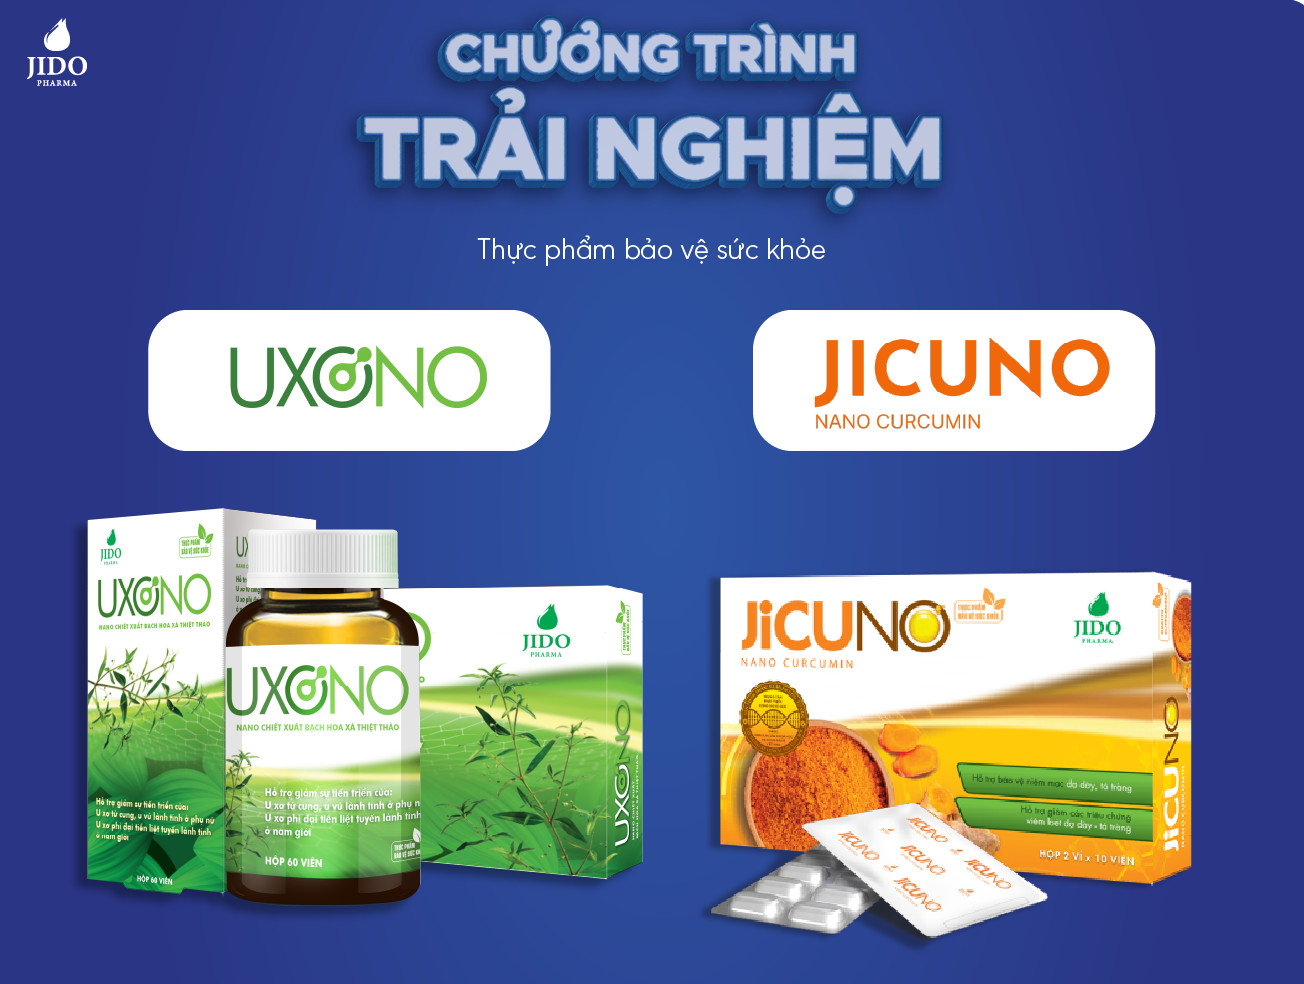 Chương trình trải nghiệm TPBVSK Jicuno và Uxono tại nhà thuốc